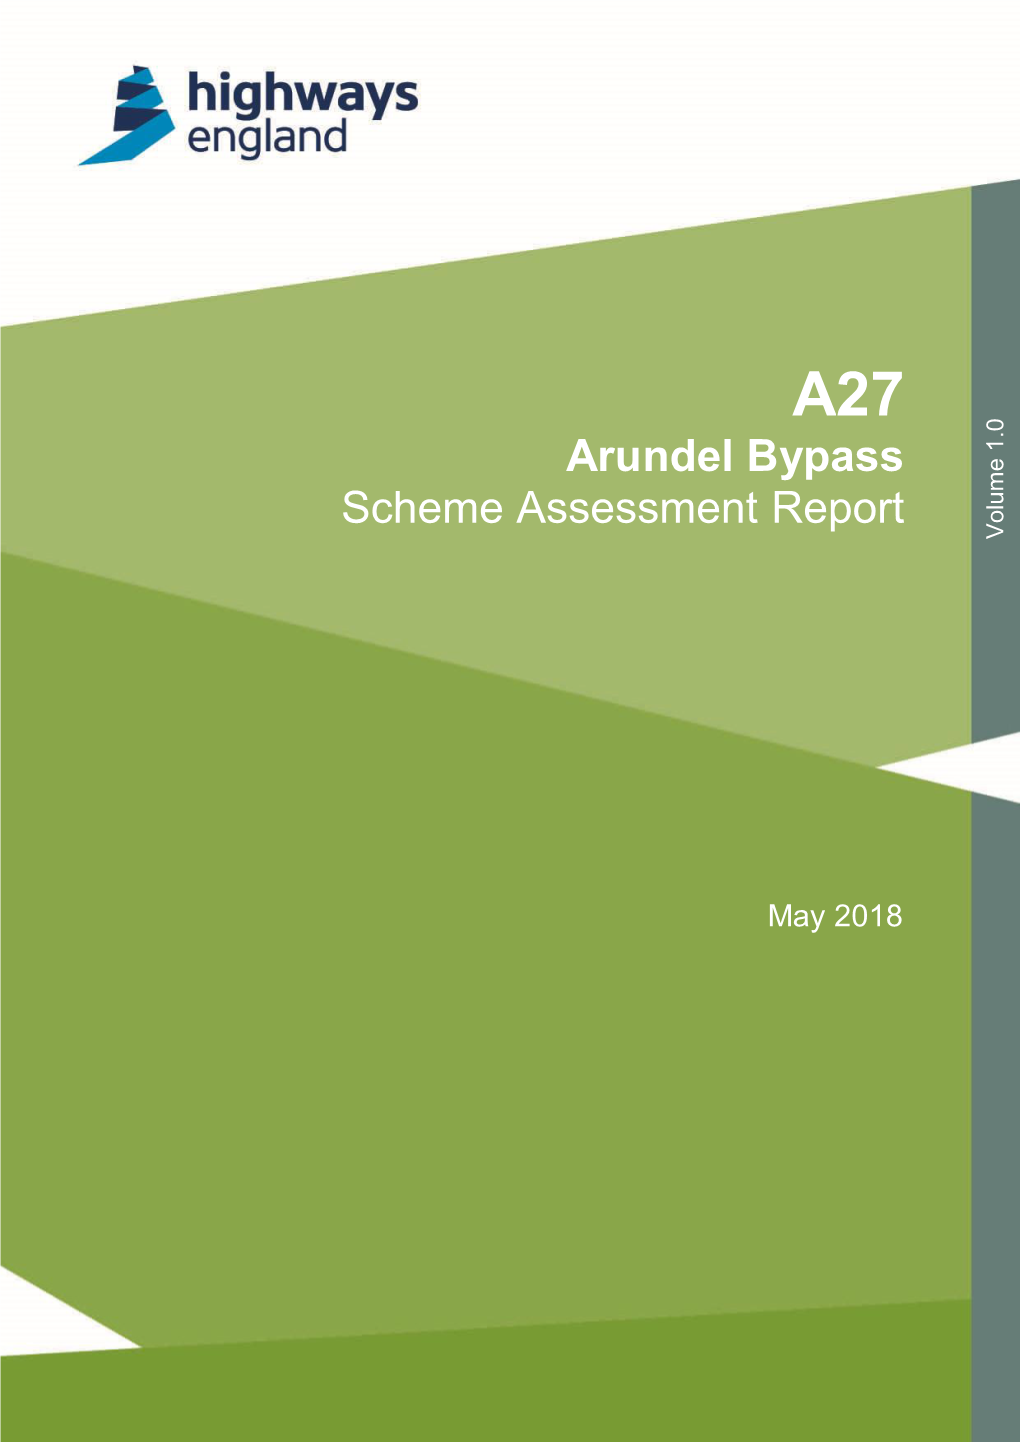 A27 Arundel Bypass Scheme Assessment Report